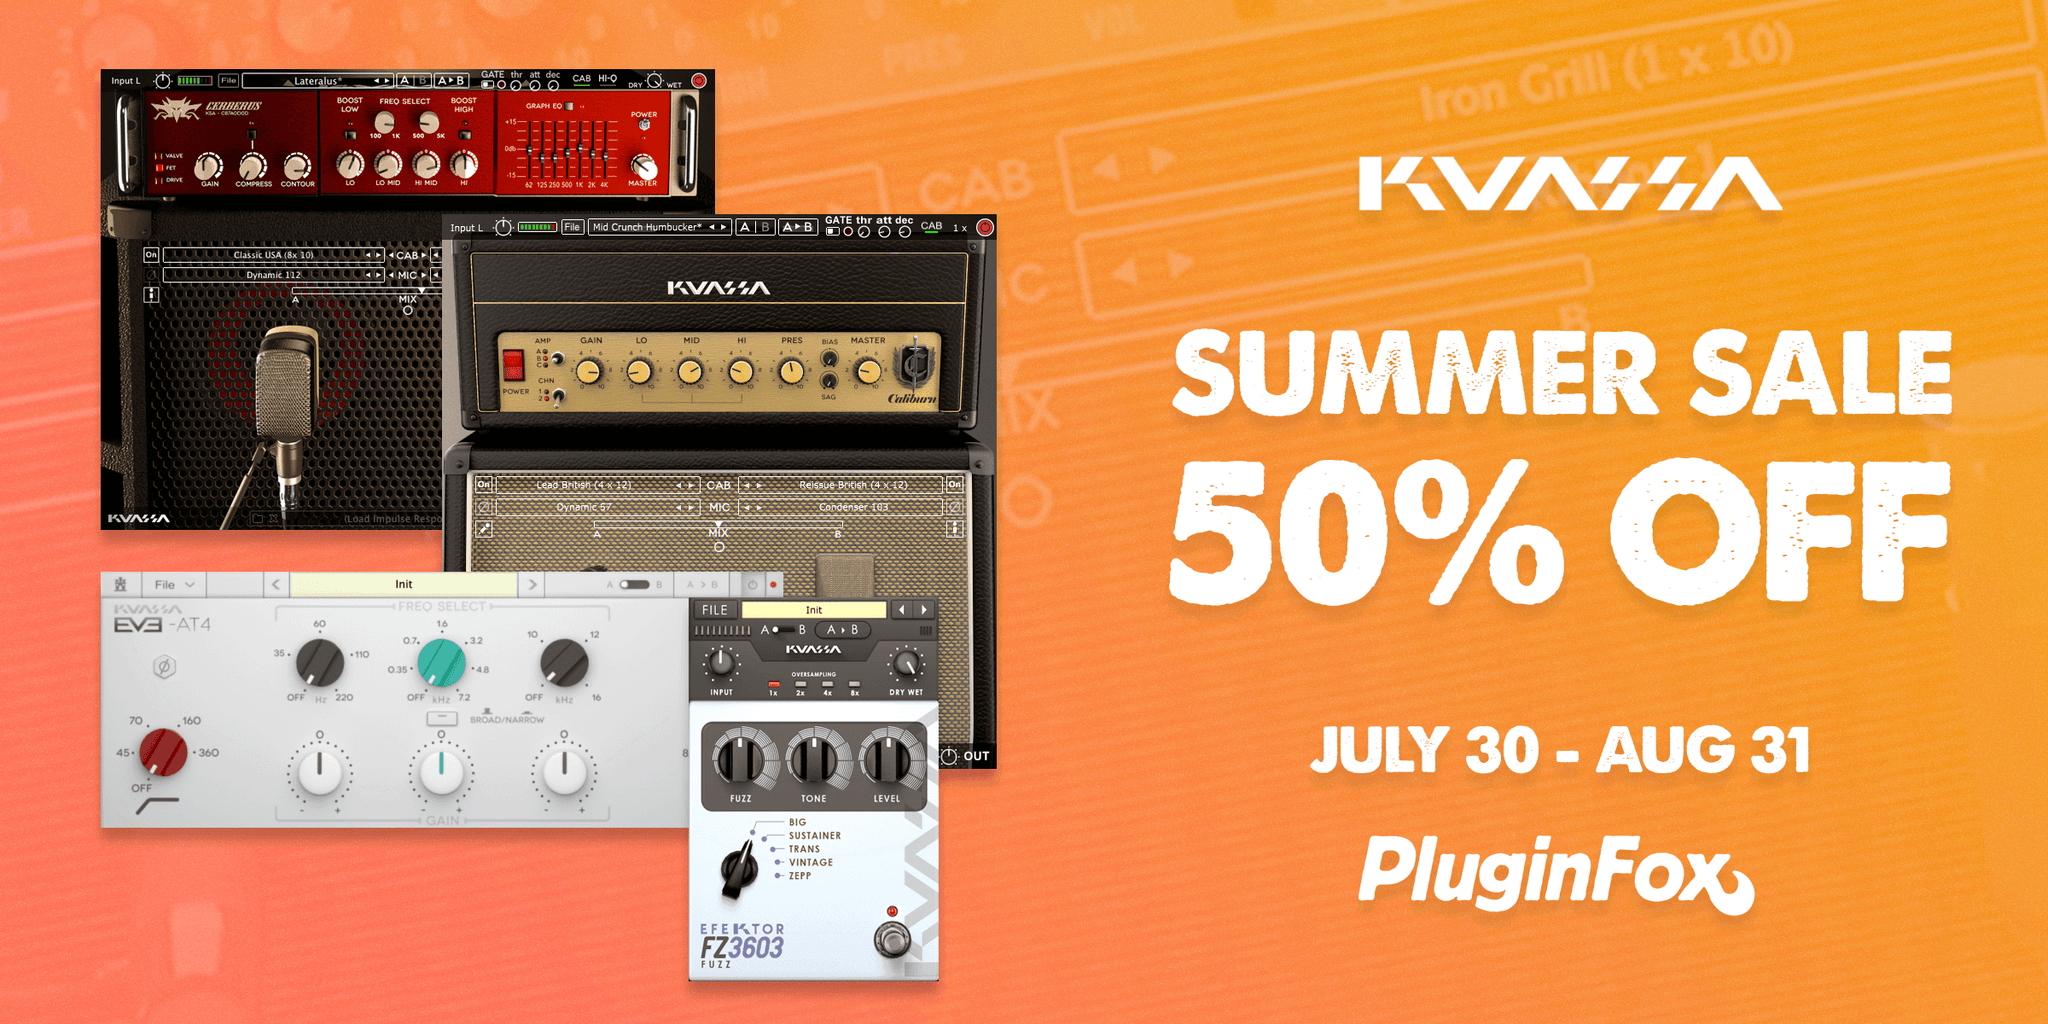 Kuassa Summer Sale - July 31 - Aug 31